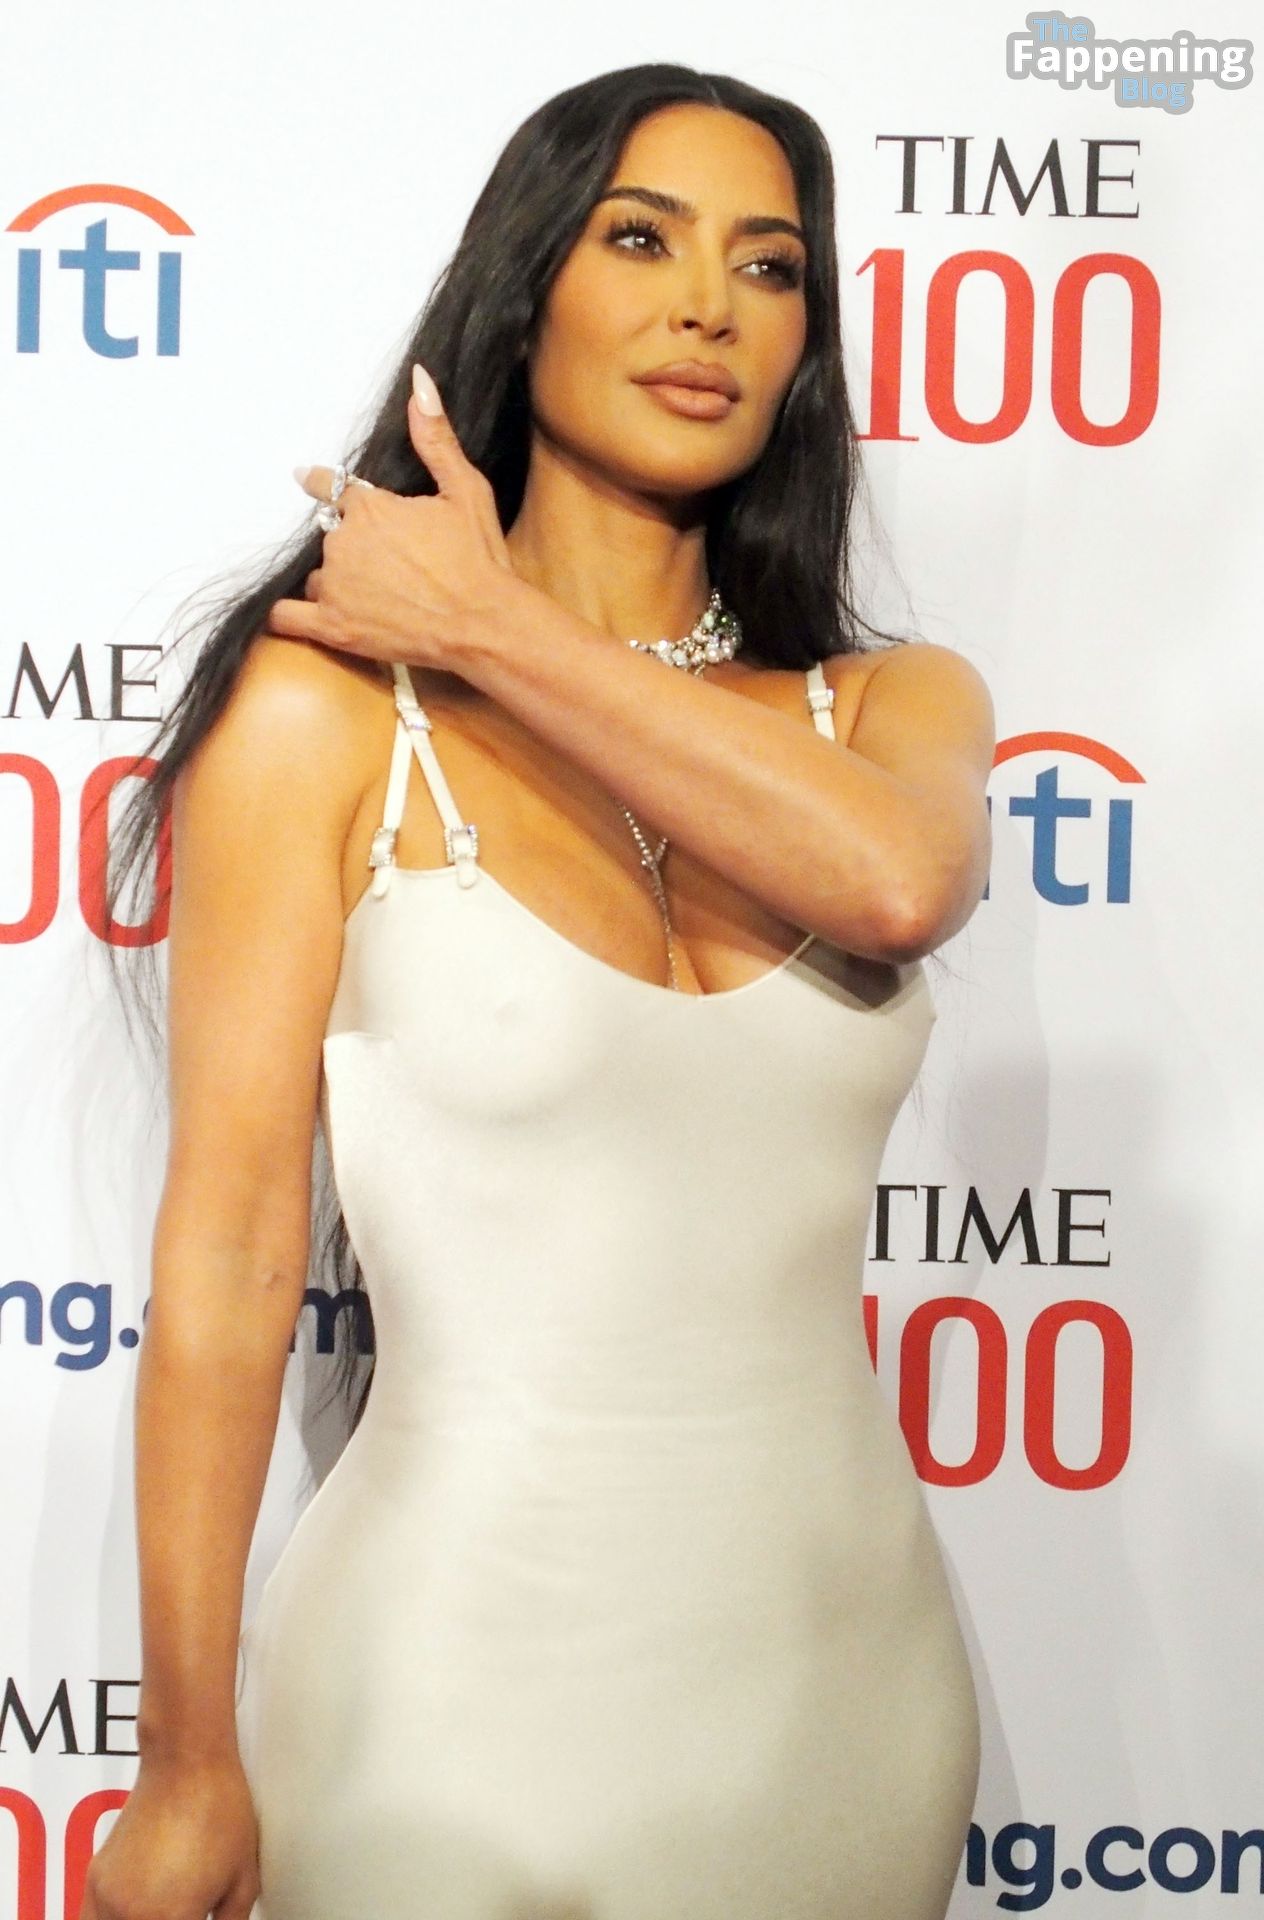 Kim-Kardashian-Sexy-The-Fappening-Blog-50-2.jpg